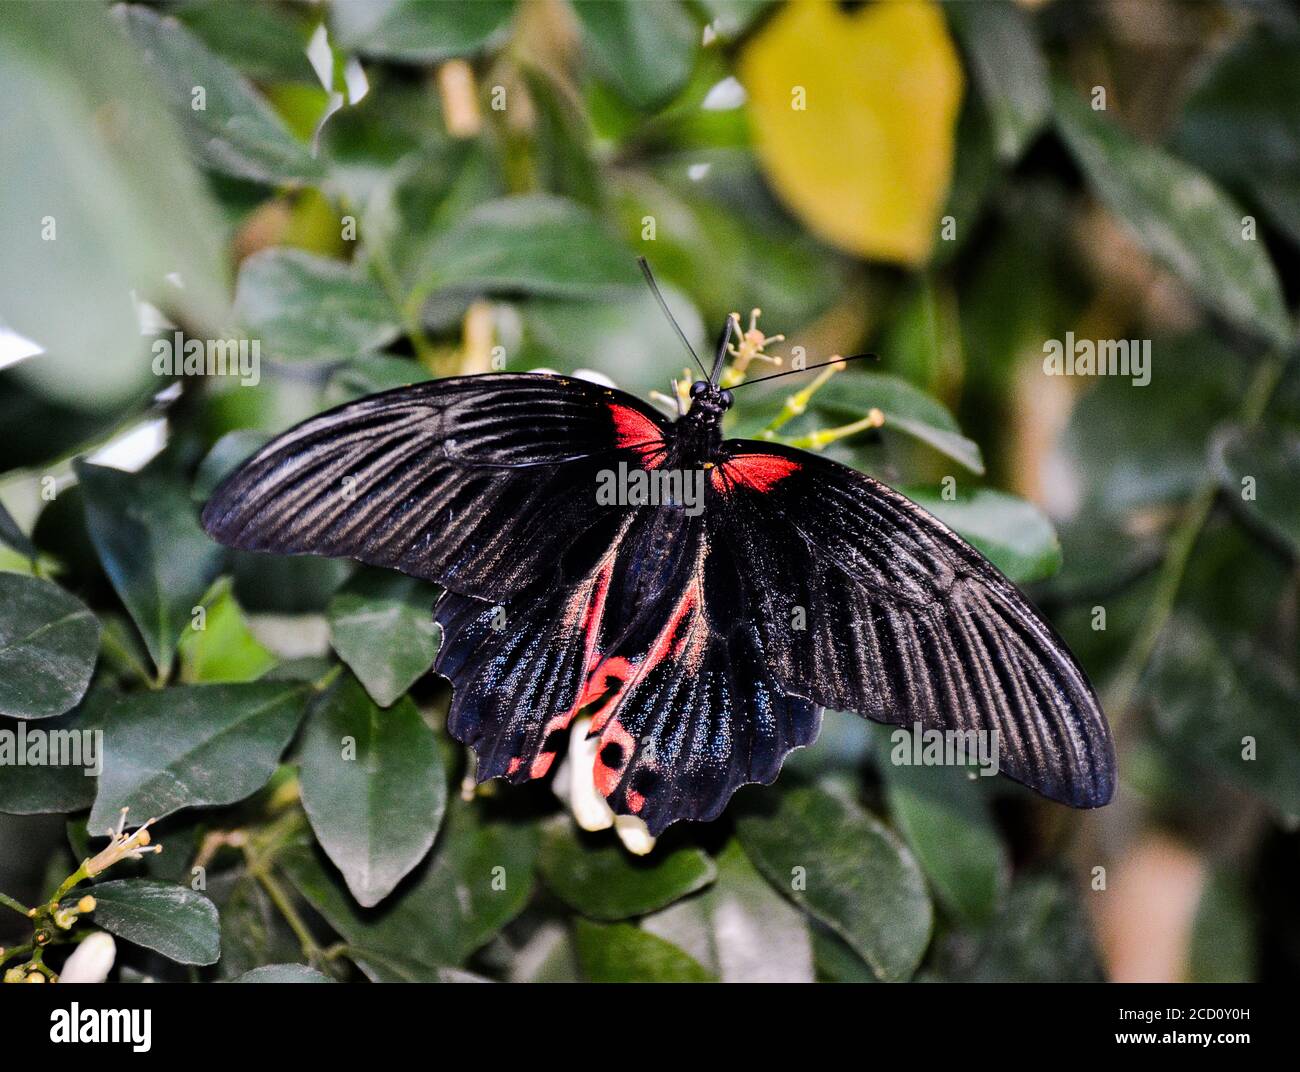 Scarlet Mormon - Papilio rumanzovia ein schwarzer Schmetterling, der auf einer Blume sitzt. Stockfoto